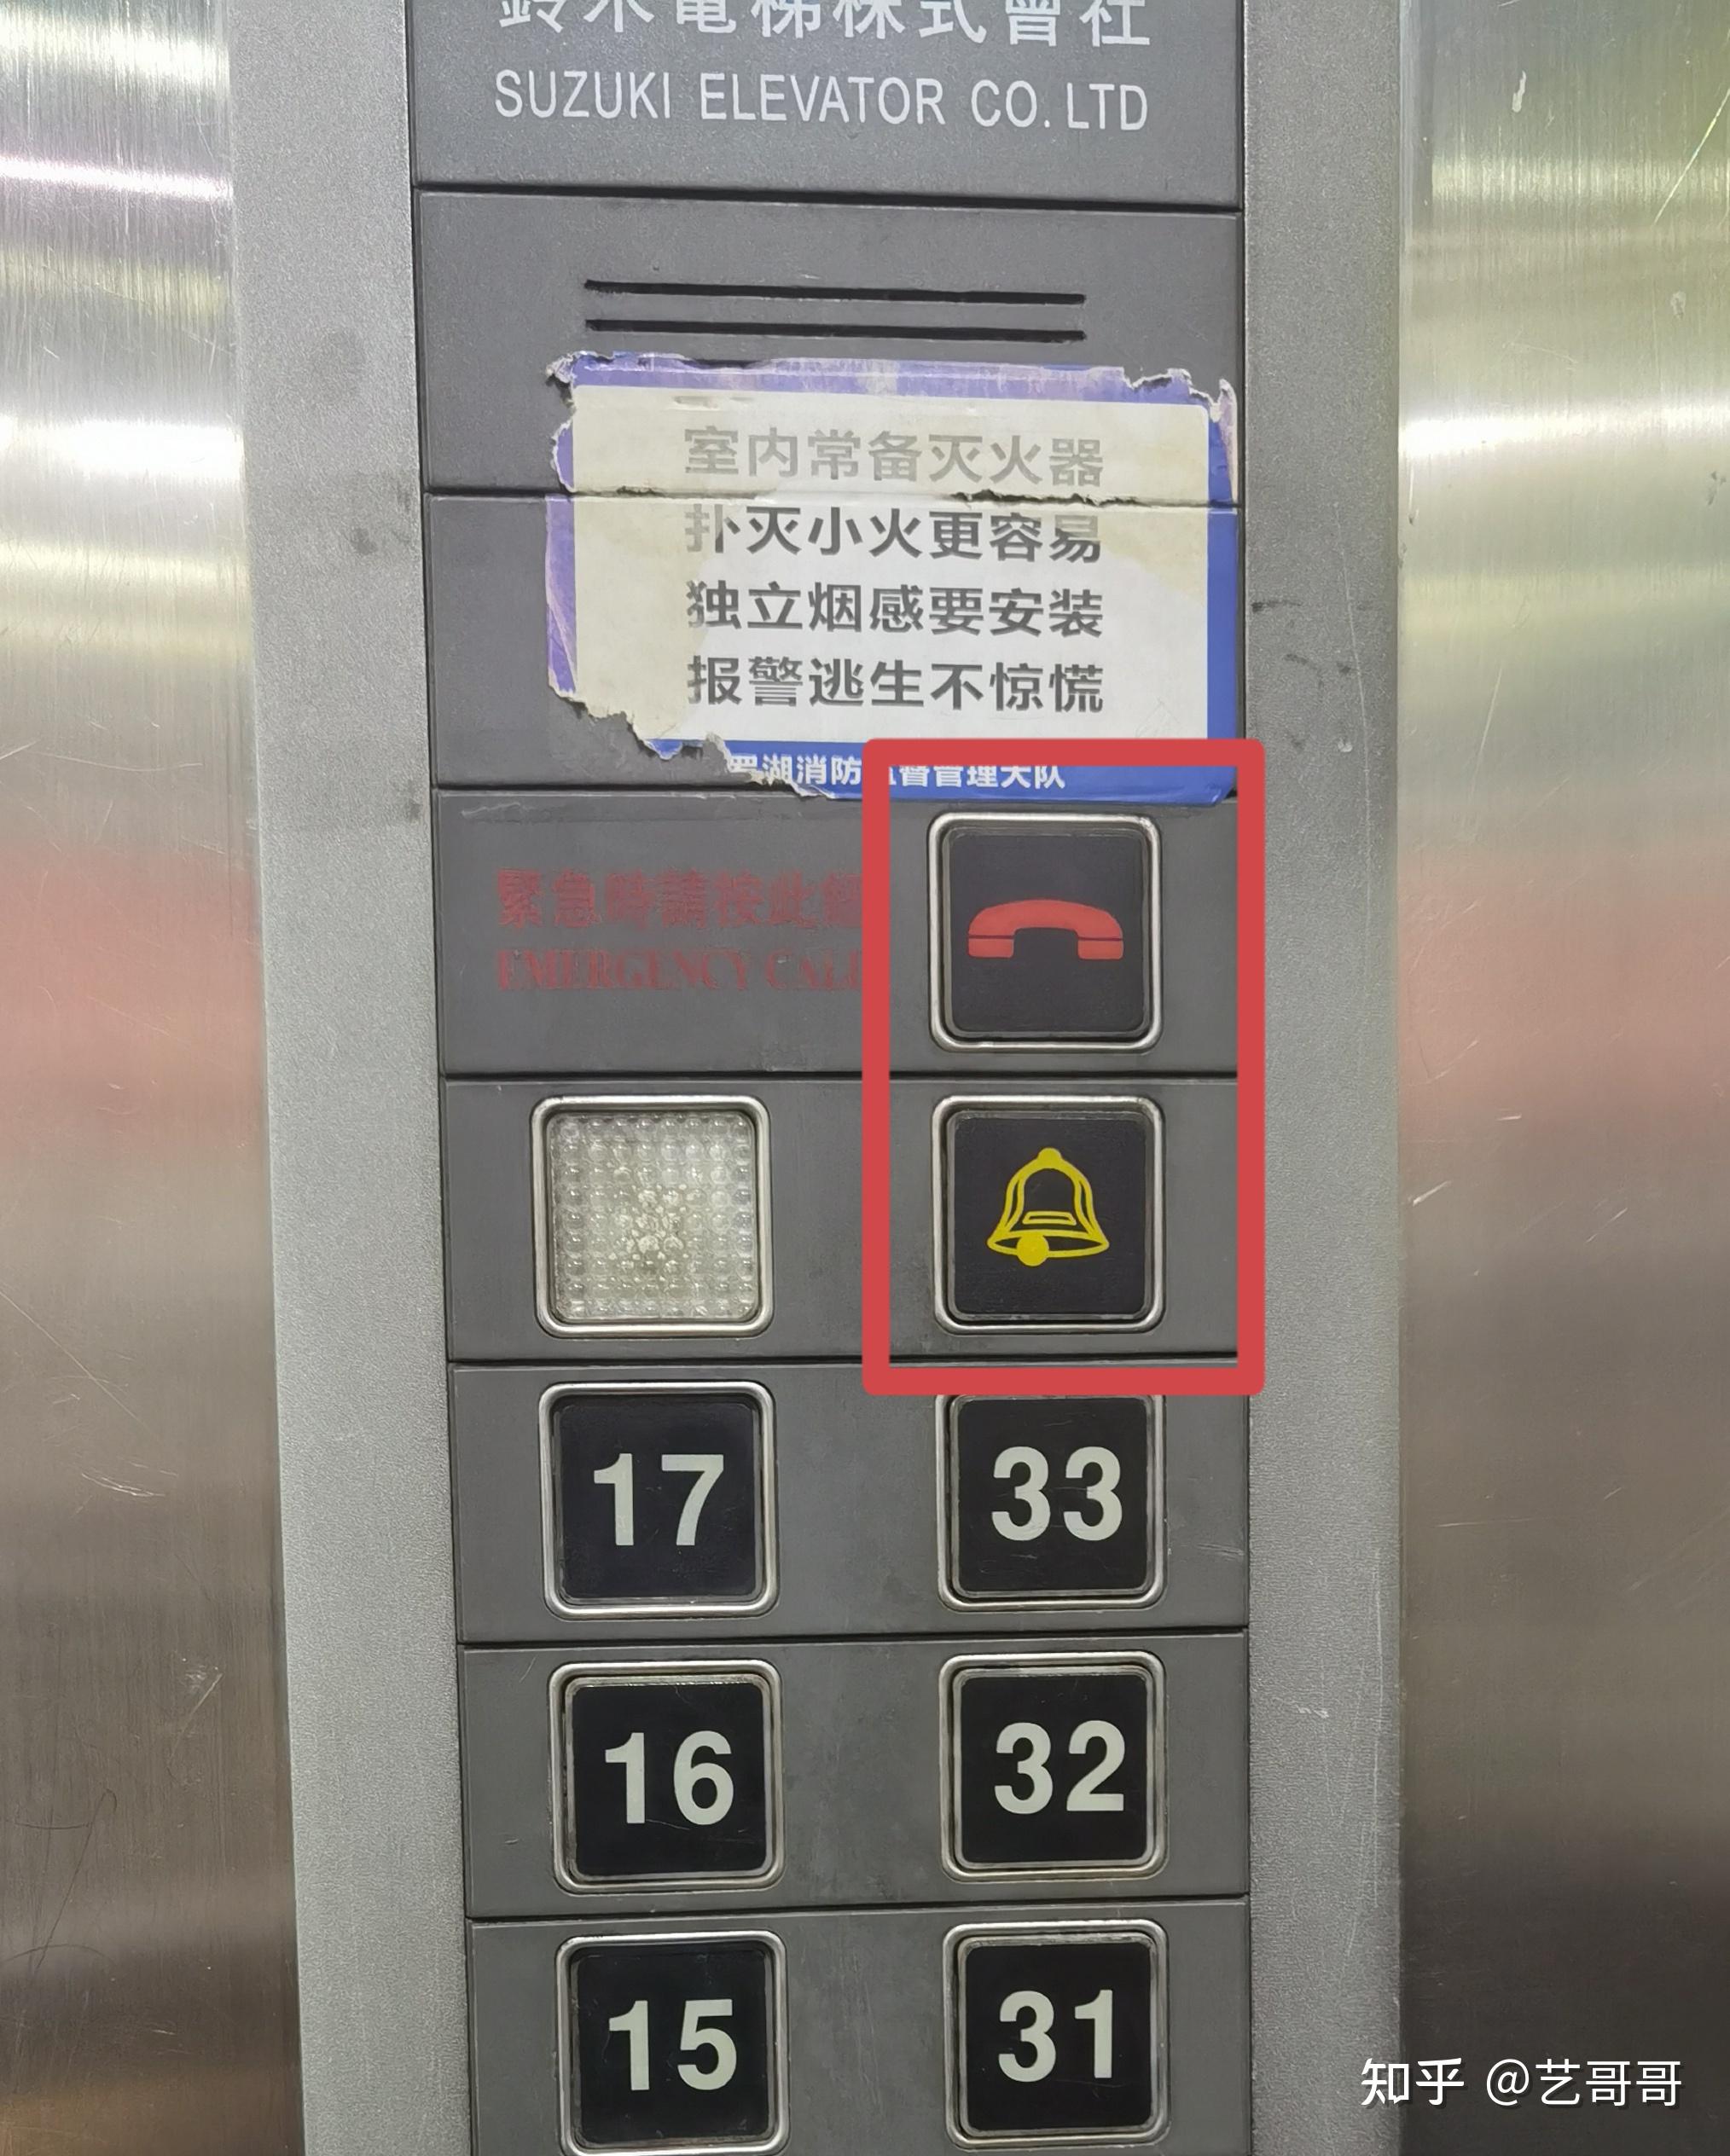 电梯紧急按钮失效,13 岁男孩自救失败坠亡,物业应承担